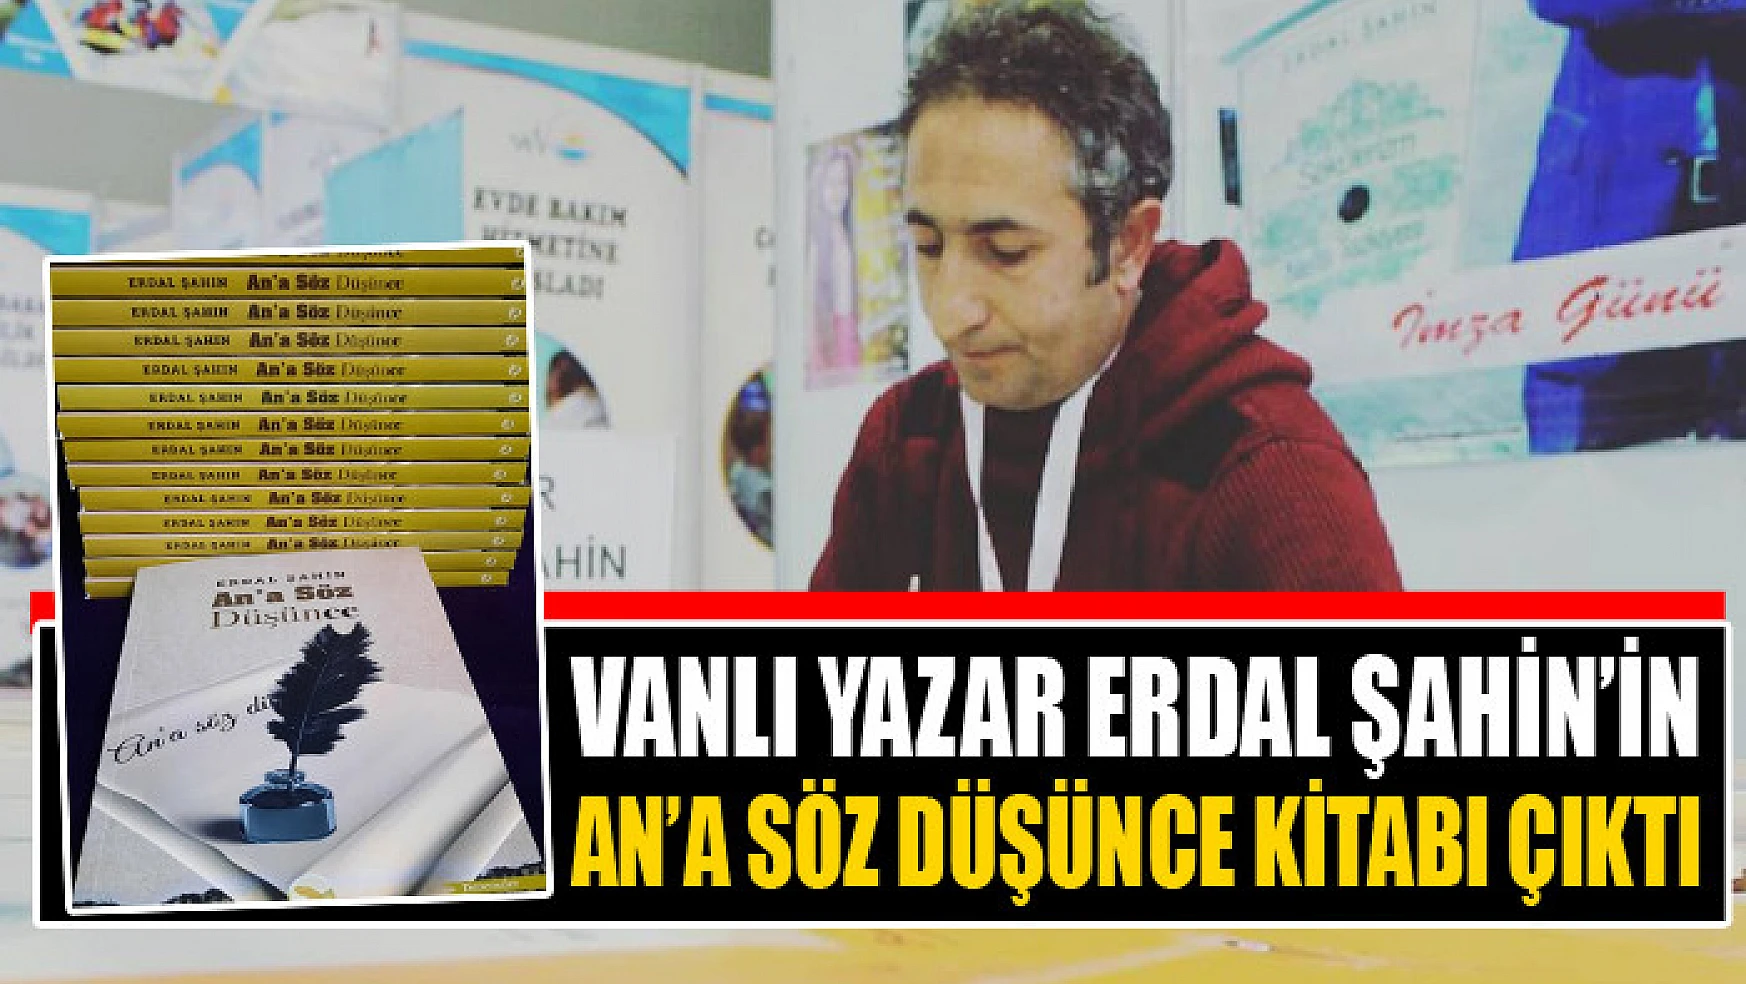 Vanlı yazar Erdal Şahin'in An'a Söz Düşünce kitabı çıktı